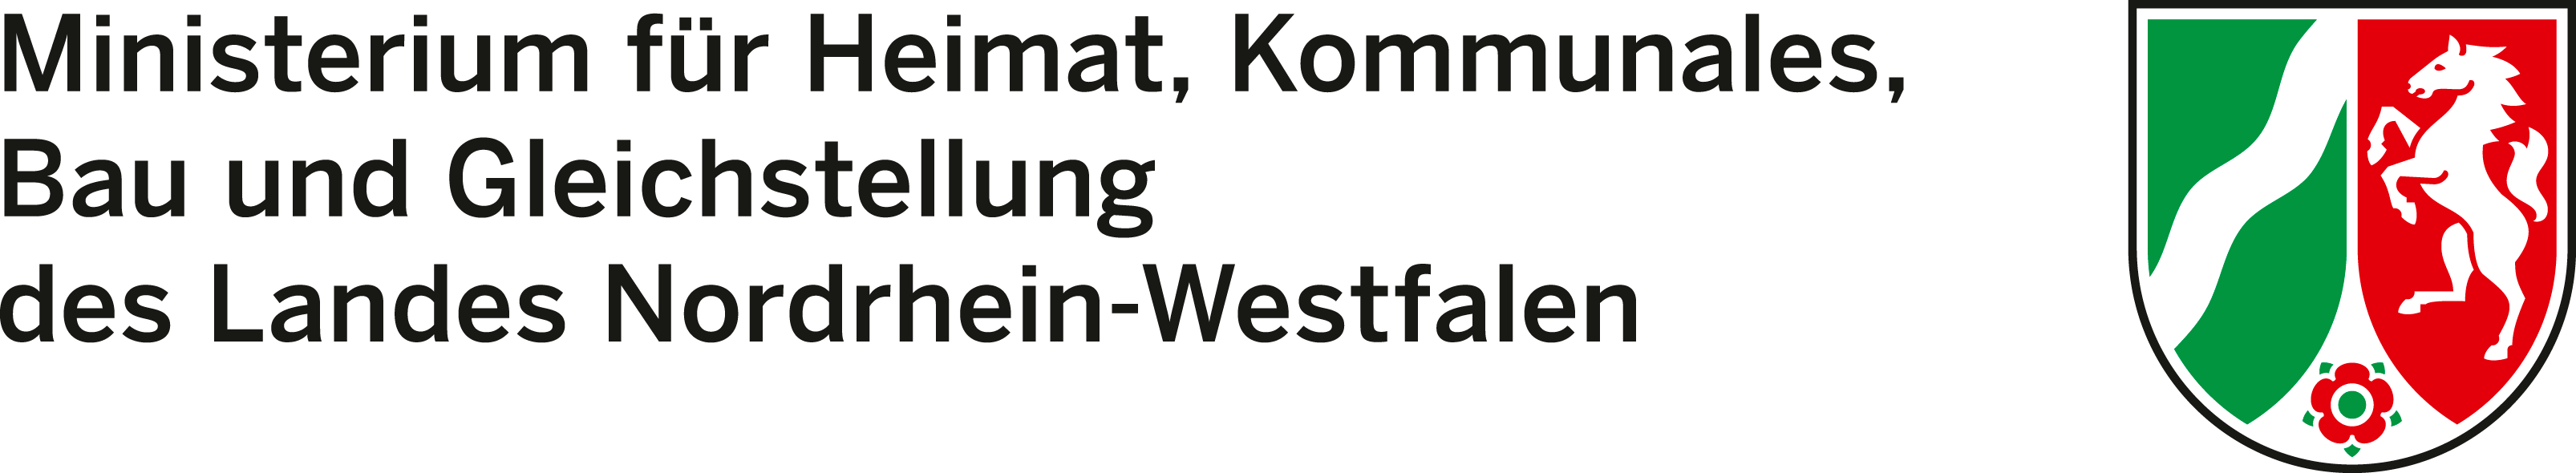 Ministerium für Bauen, Wohnen, Stadtentwicklung und Verkehr des Landes NRW